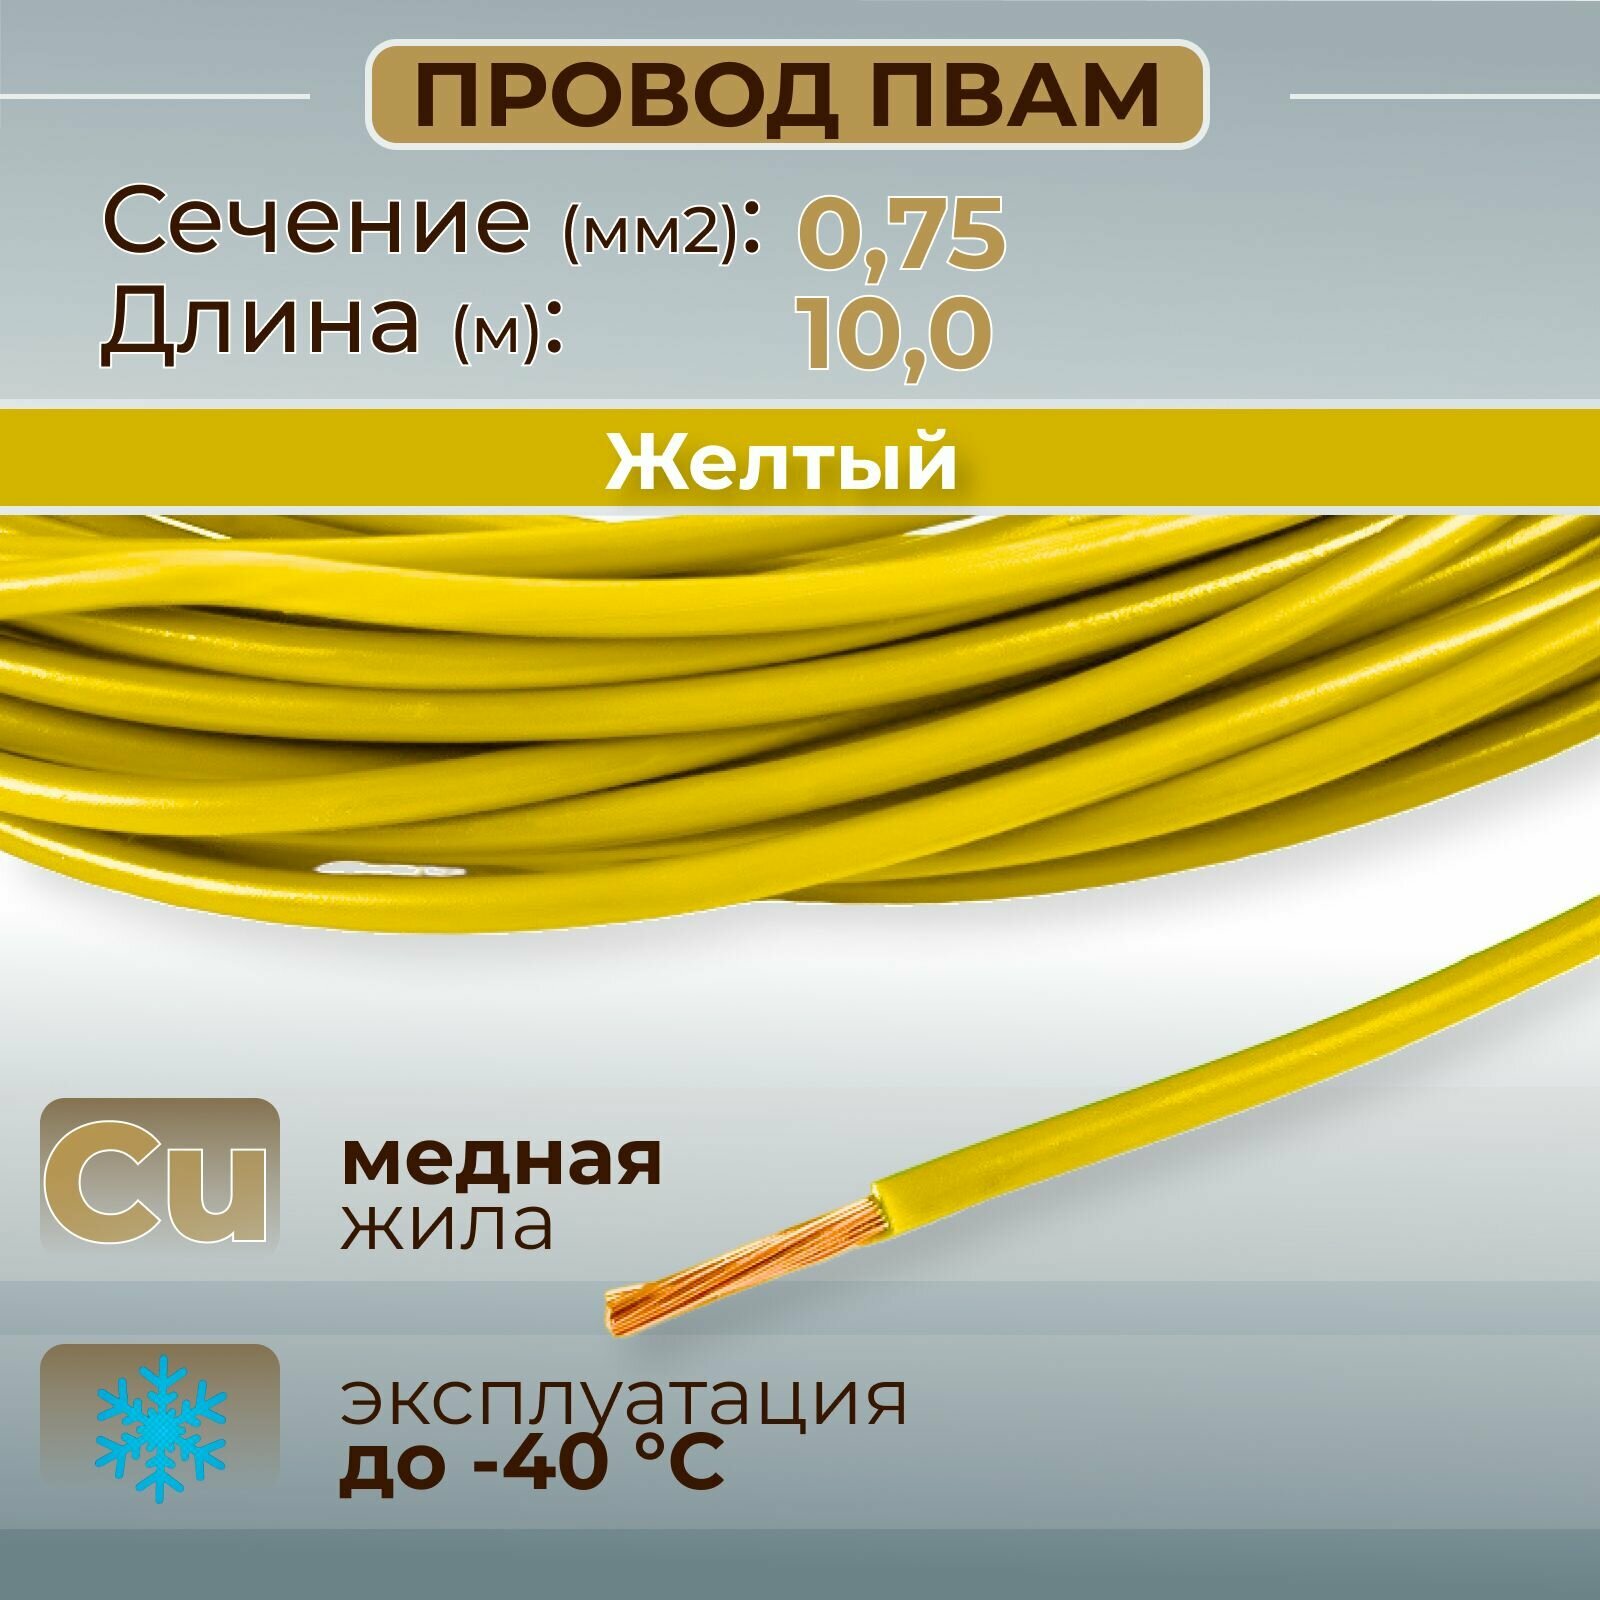 Провода автомобильные пвам цвет желтый с сечением 0,75 кв. мм, длина 10м